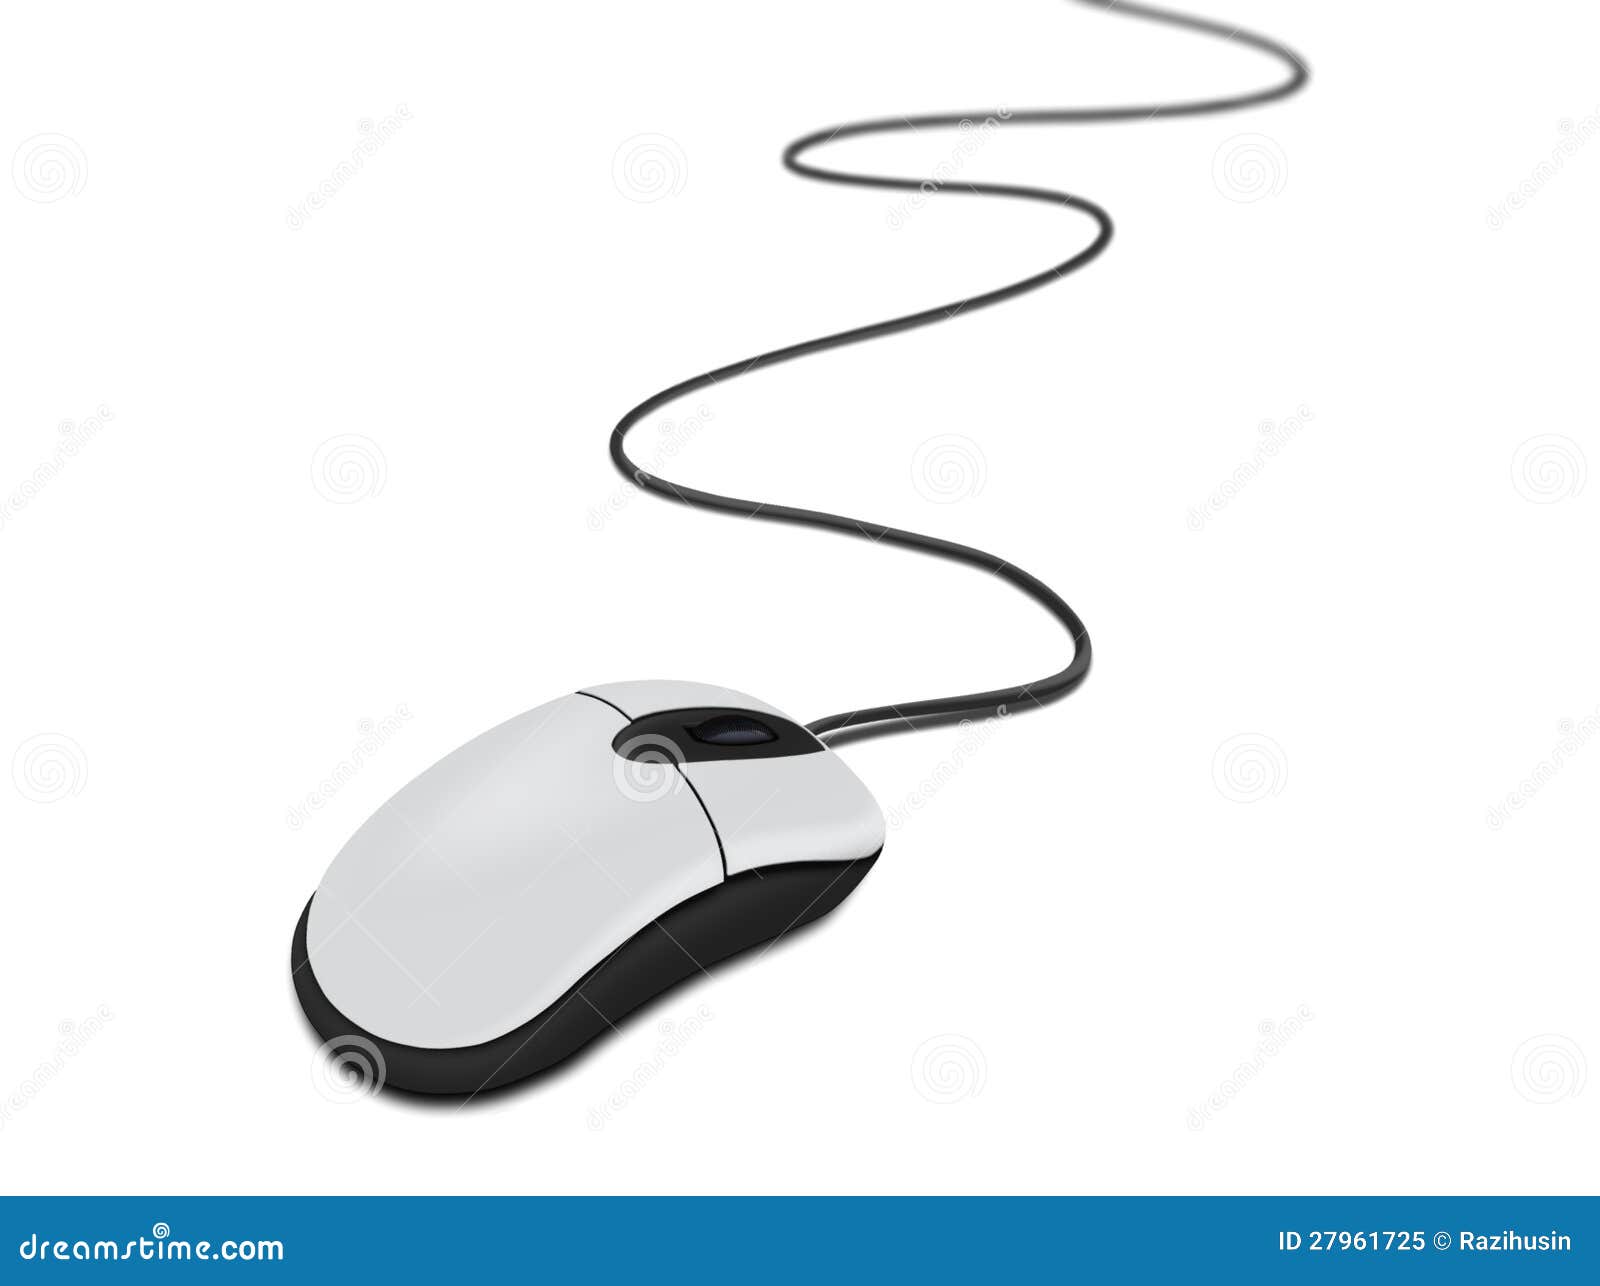 Черная белая компьютерная мышь. Компьютерная мышь с проводом. Мышка с проводом. Мышка с проводом для компьютера. Белая компьютерная мышь с проводом.